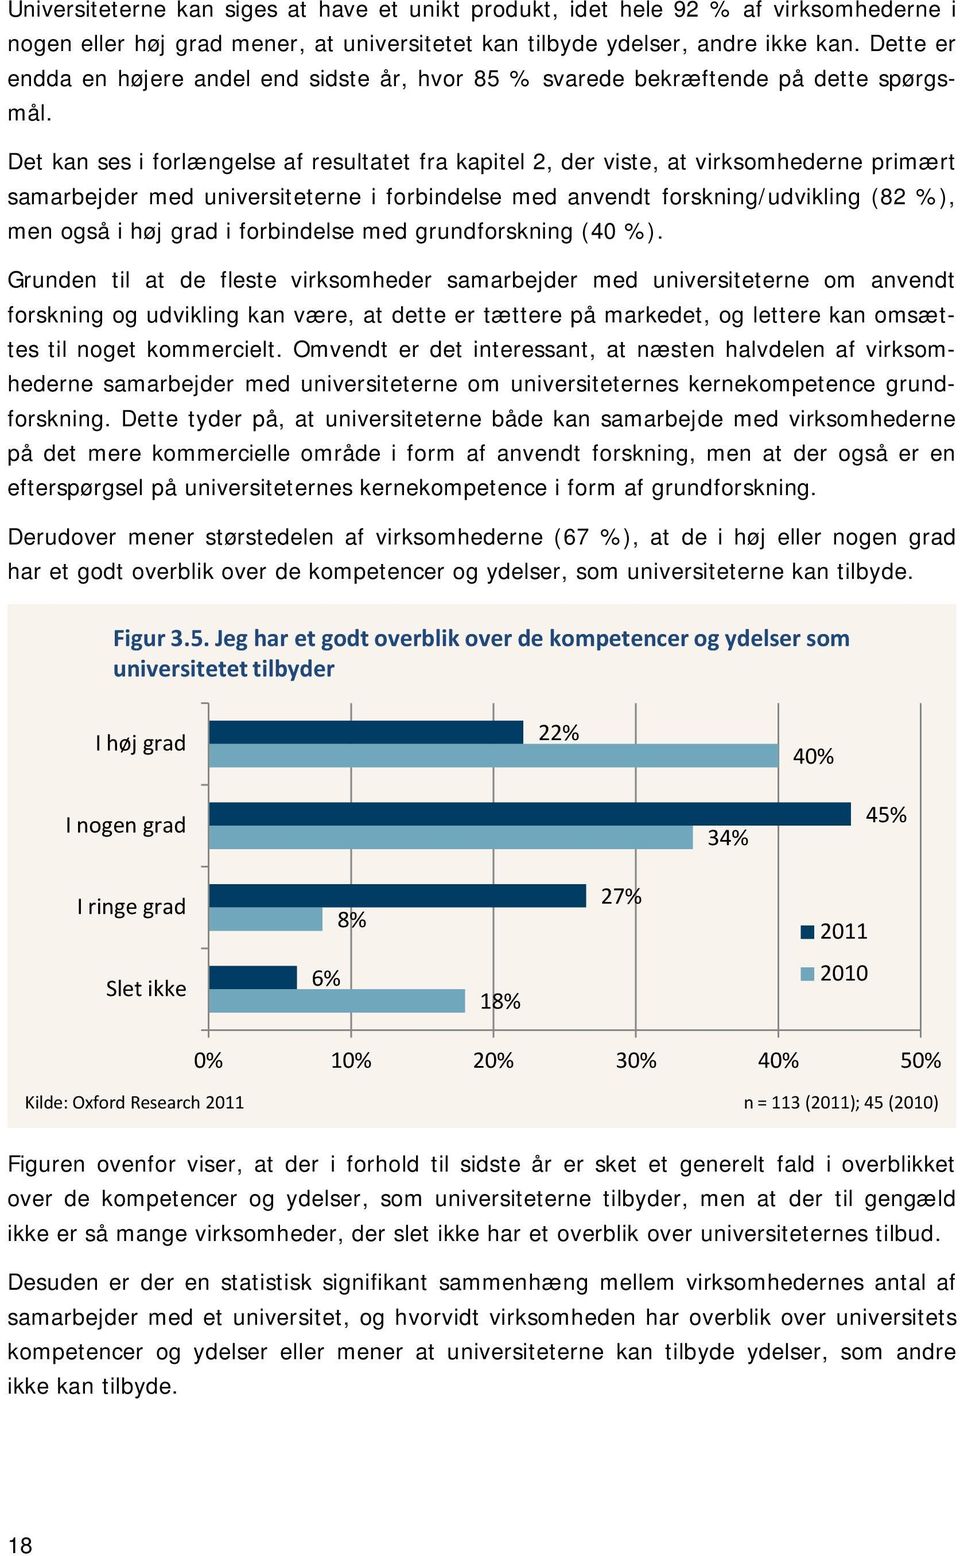 Det kan ses i forlængelse af resultatet fra kapitel 2, der viste, at virksomhederne primært samarbejder med universiteterne i forbindelse med anvendt forskning/udvikling (82 %), men også i høj grad i